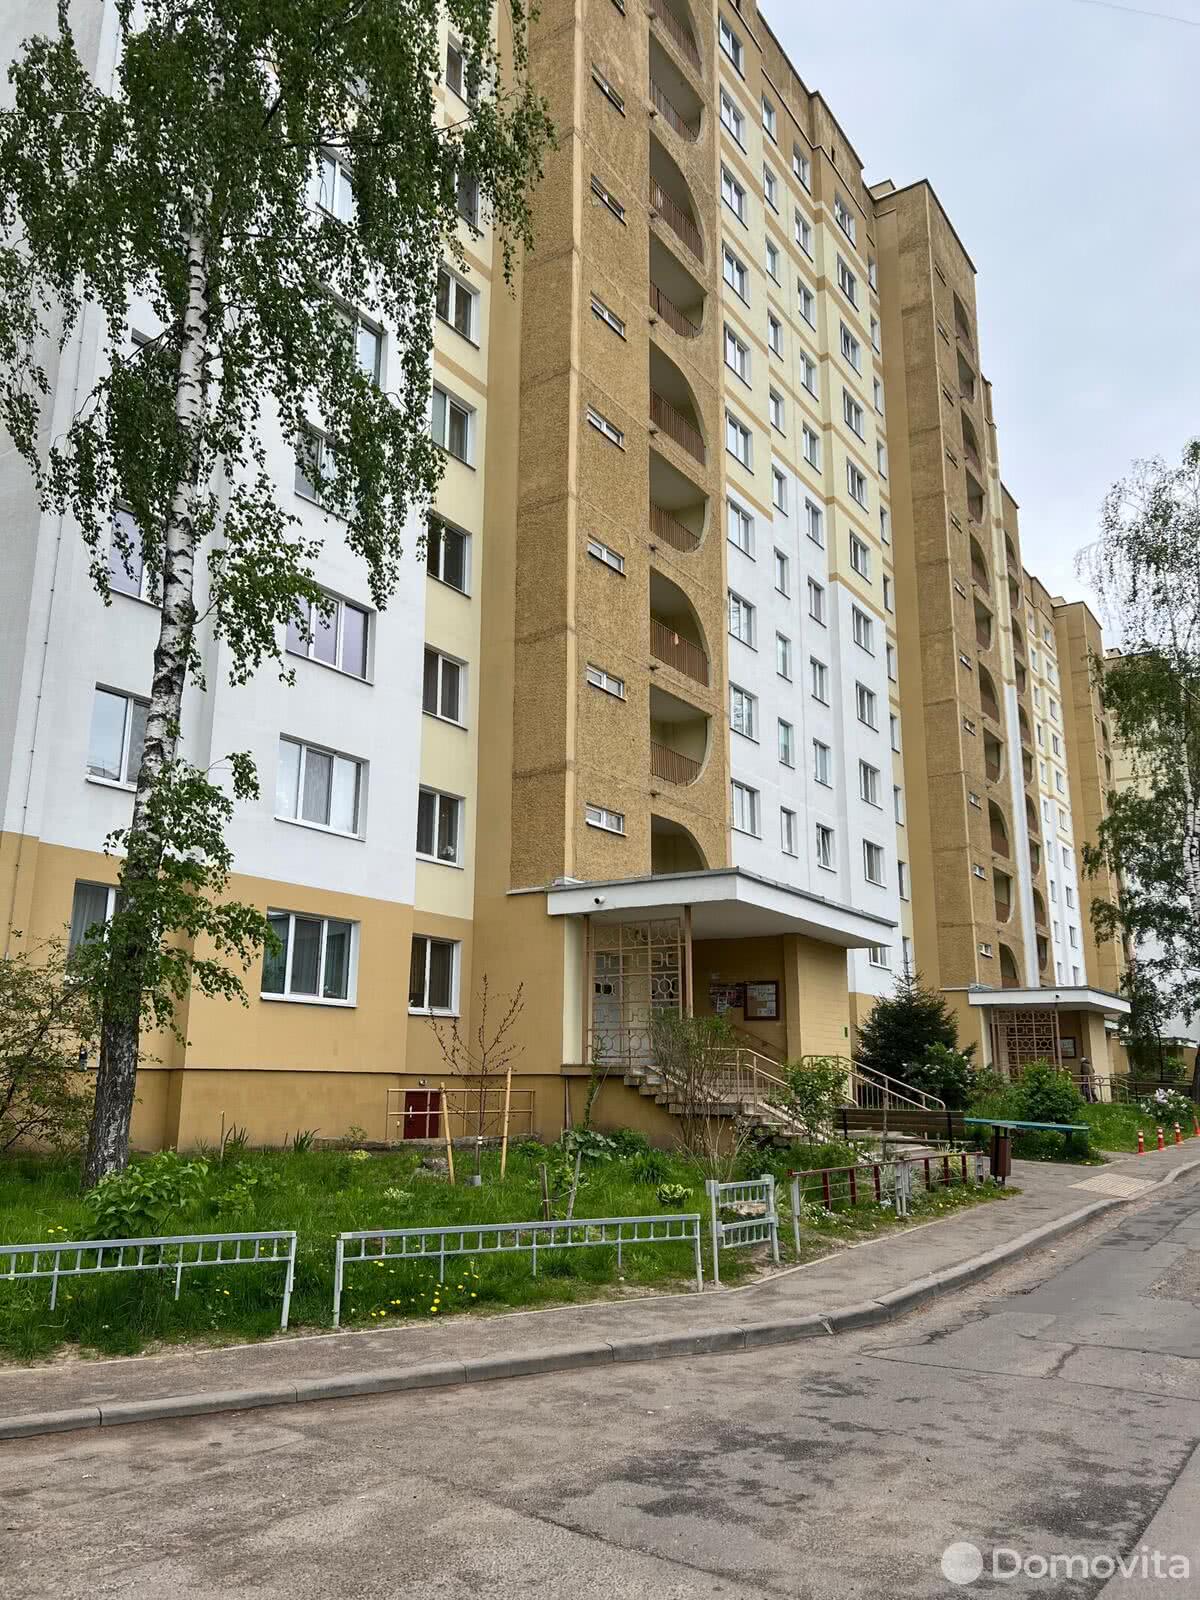 Цена продажи квартиры, Минск, пр-т Рокоссовского, д. 77